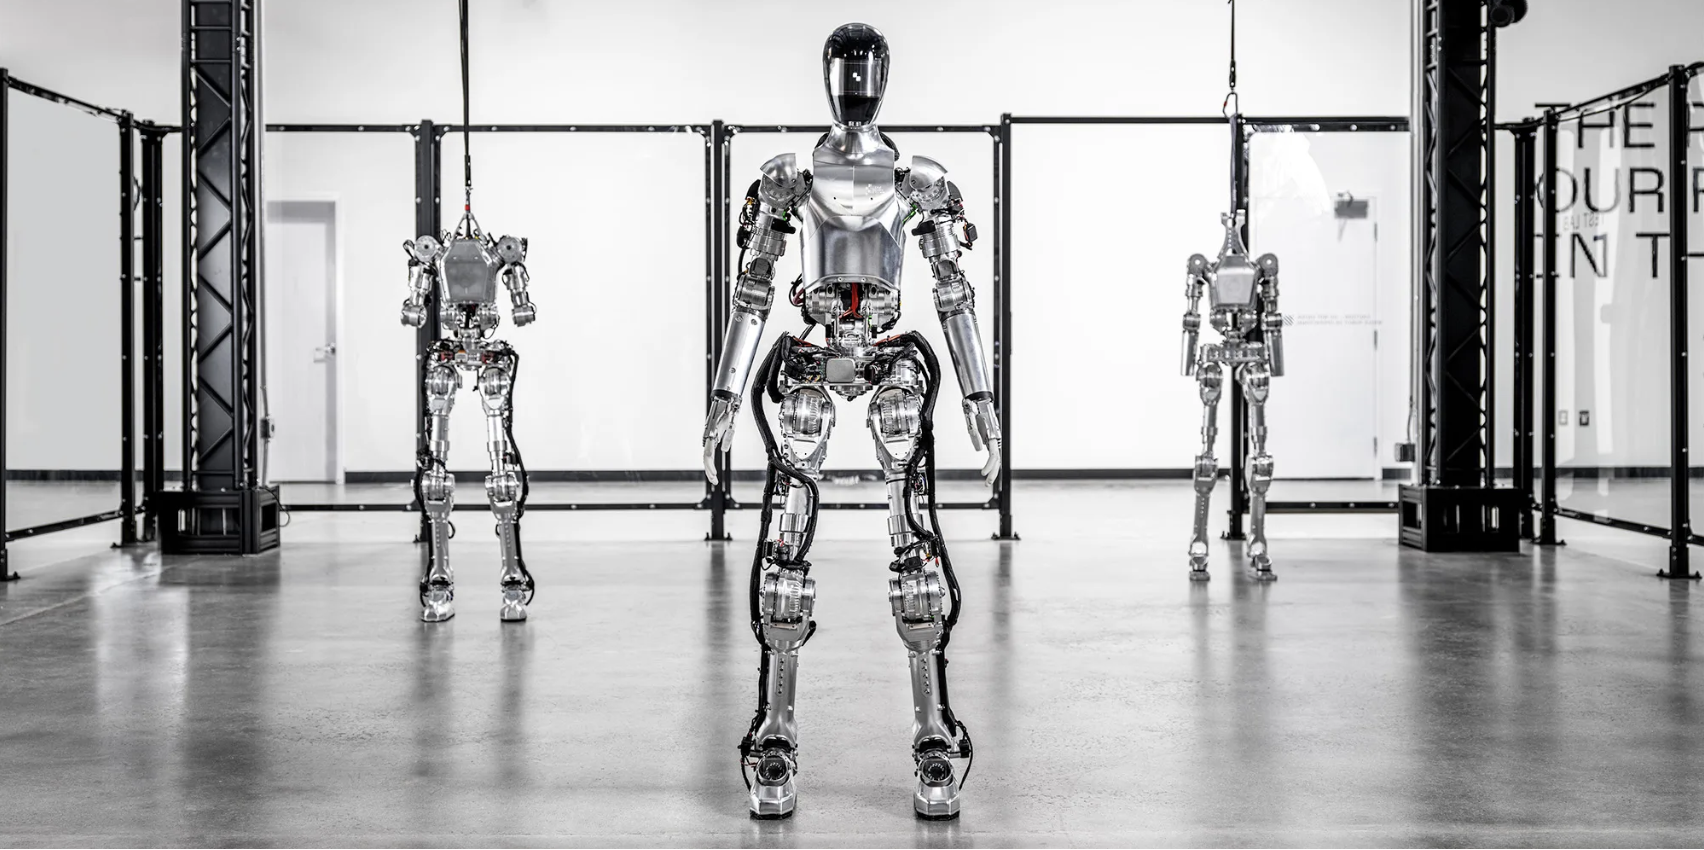 Le robot humanoïde de Figure peut tenir une conversation complète avec vous